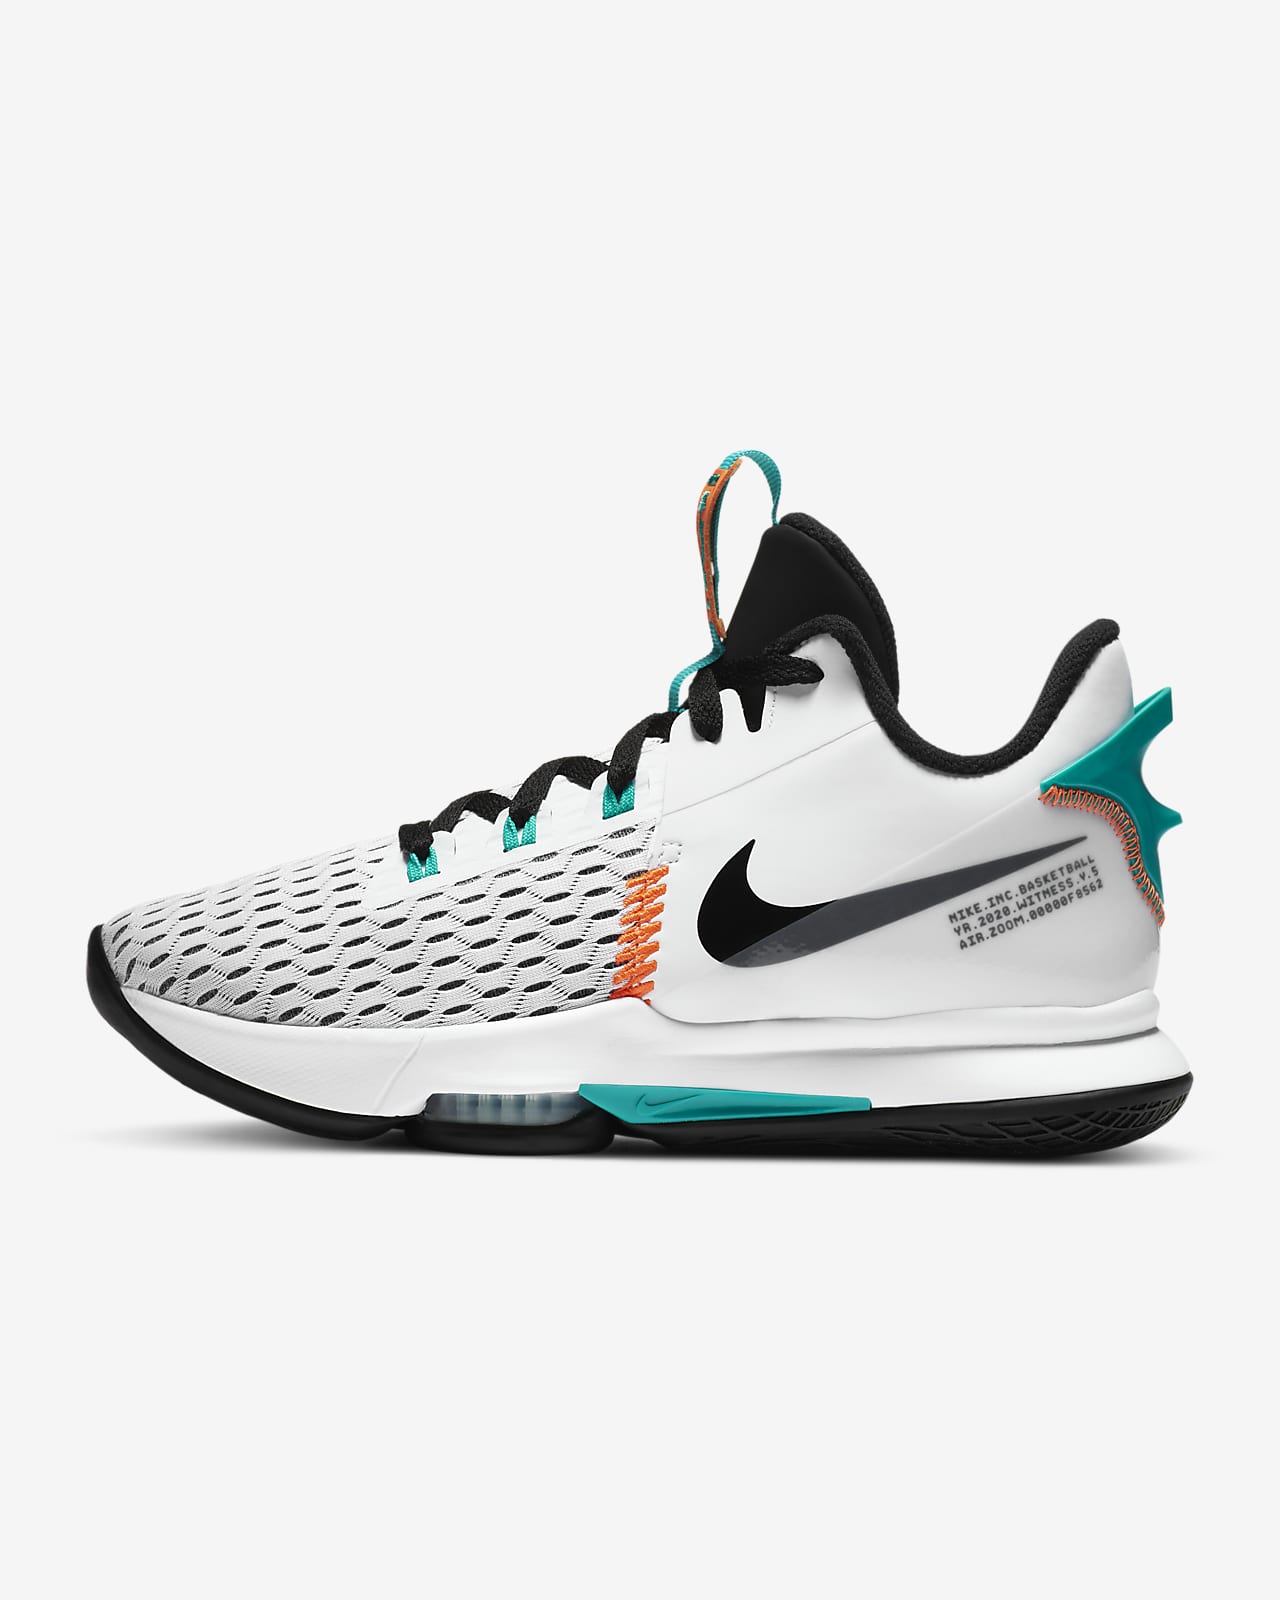 LeBron Witness 5 EP 籃球鞋。Nike TW